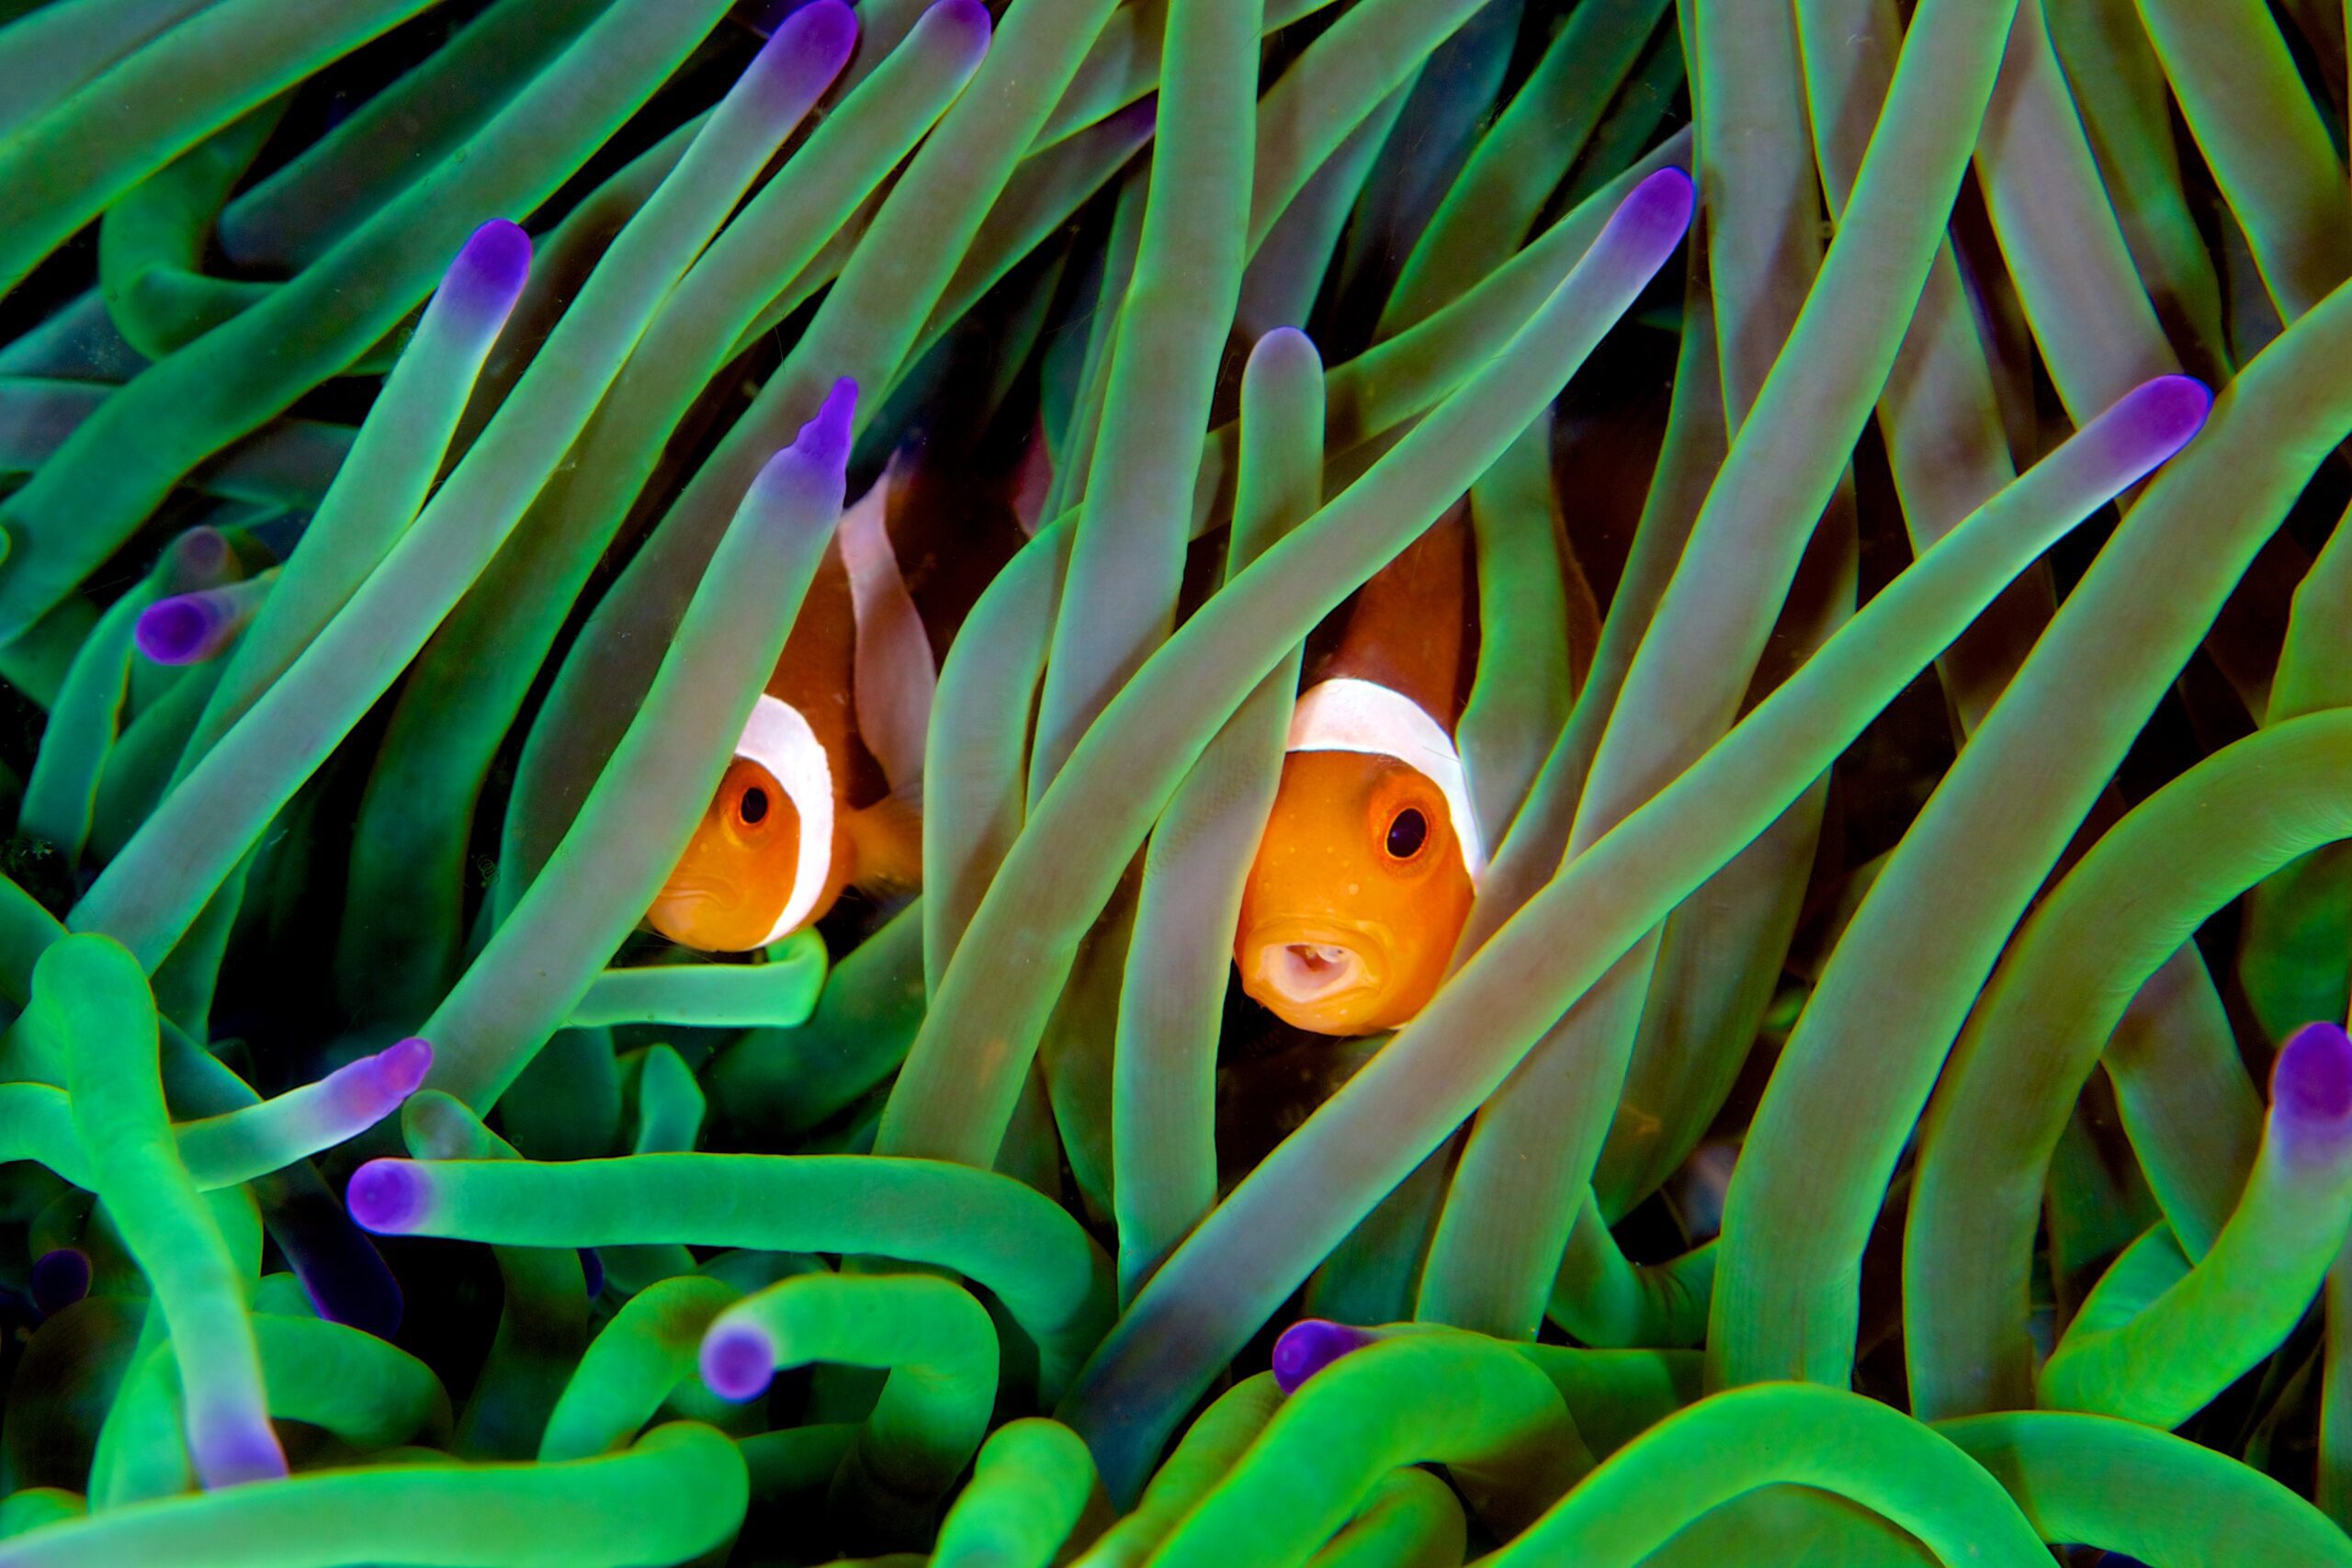 Sea anemone inhabit the ocean